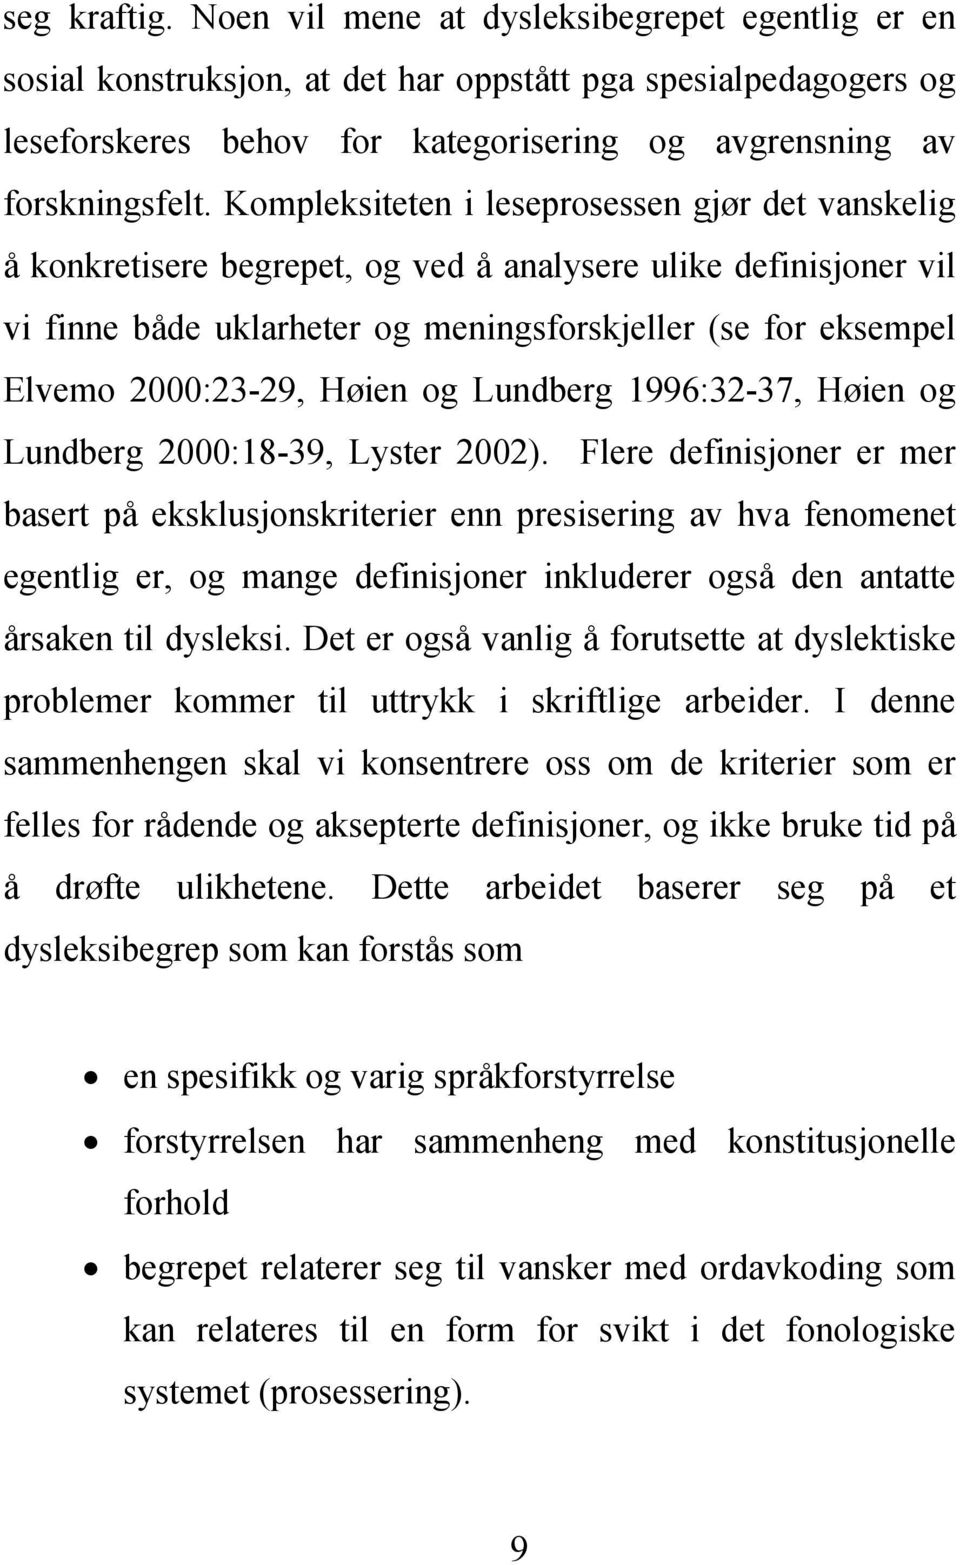 Høien og Lundberg 1996:32-37, Høien og Lundberg 2000:18-39, Lyster 2002).